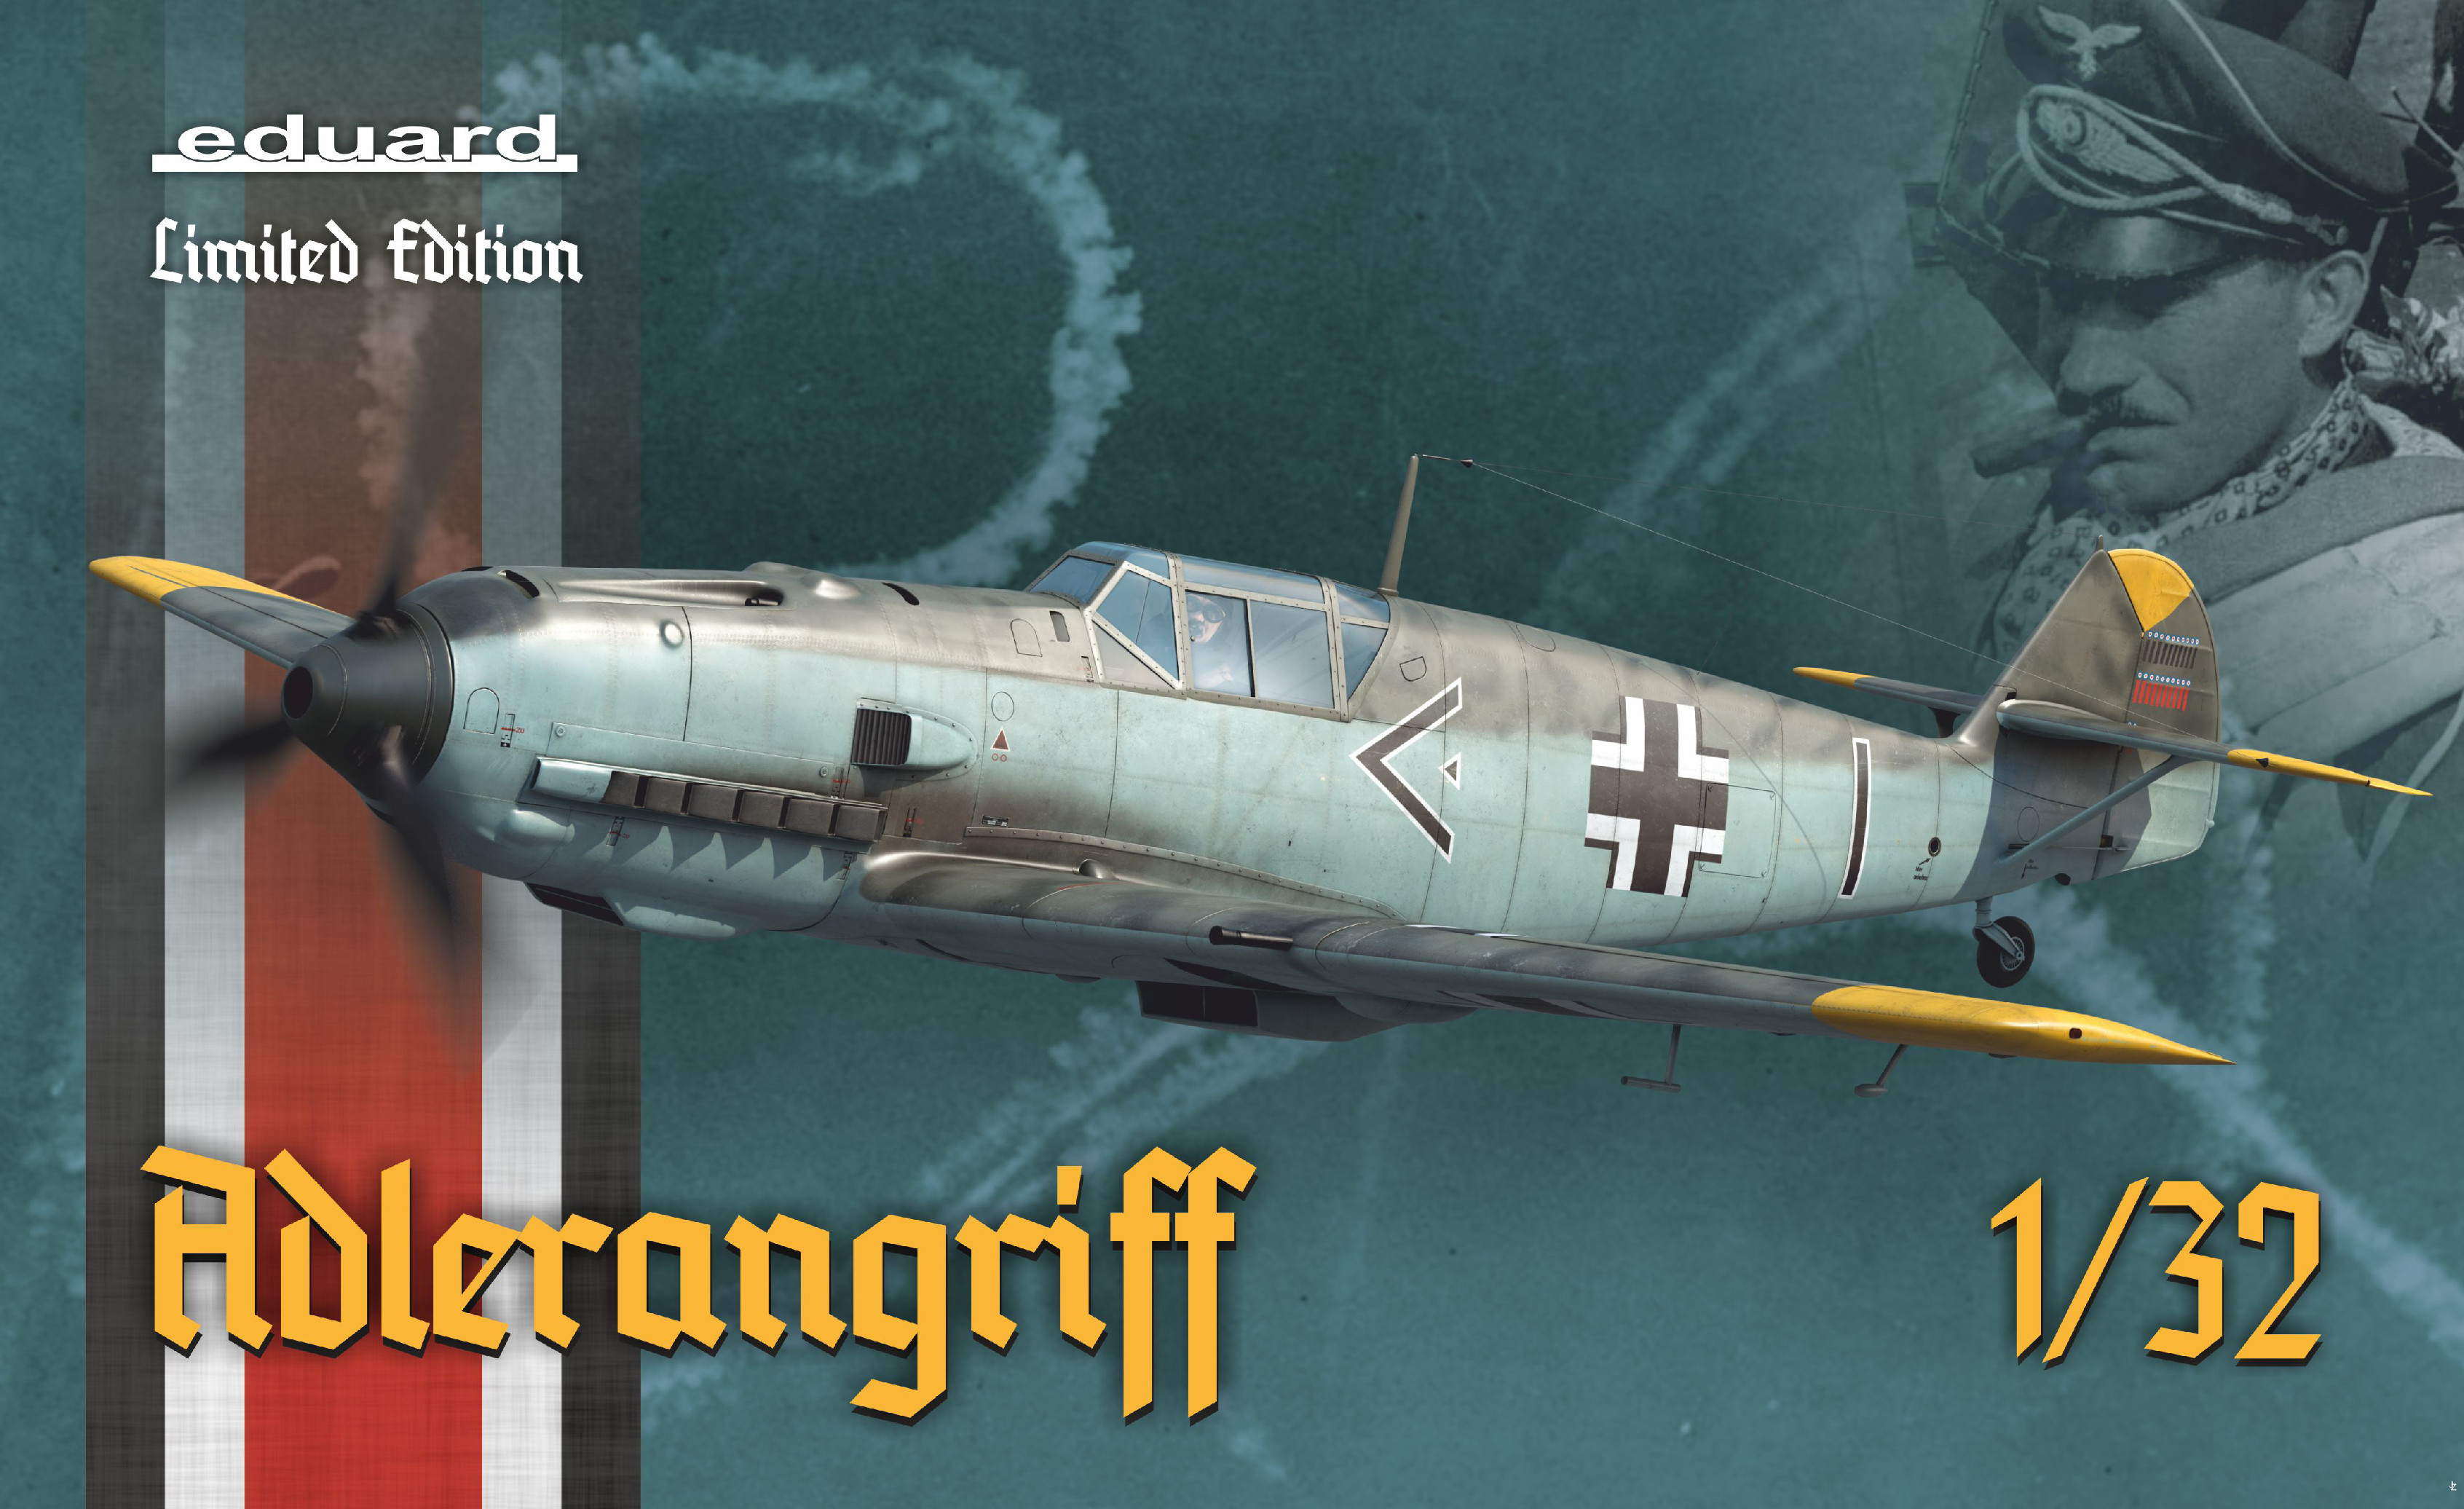 1/32 ADLERANGRIFF - Bf 109E v bitvě o Británii - Bf 109 E-1, 3, 4 a 4/B (Limited Edition) (11107)